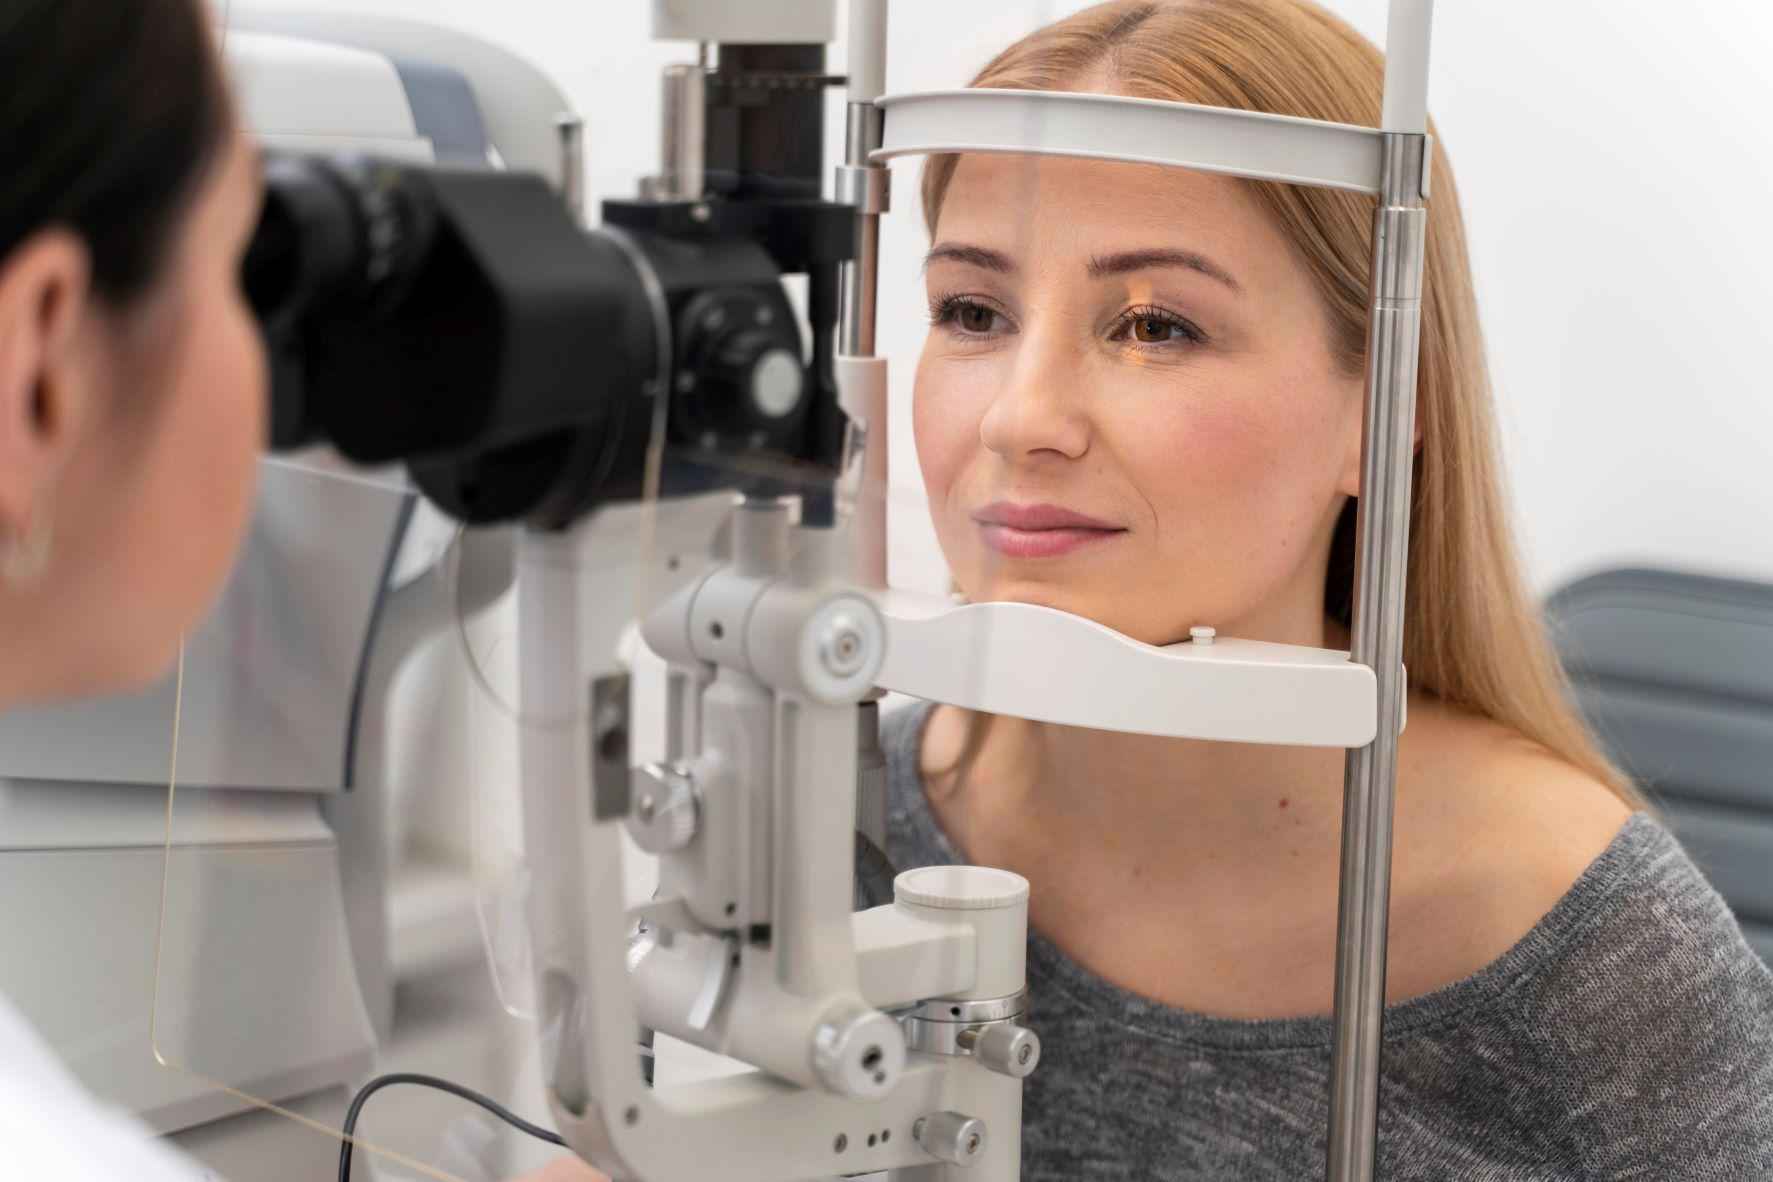 Avaliação oftalmológica é forte aliada no descobrimento precoce de doenças - Freepik